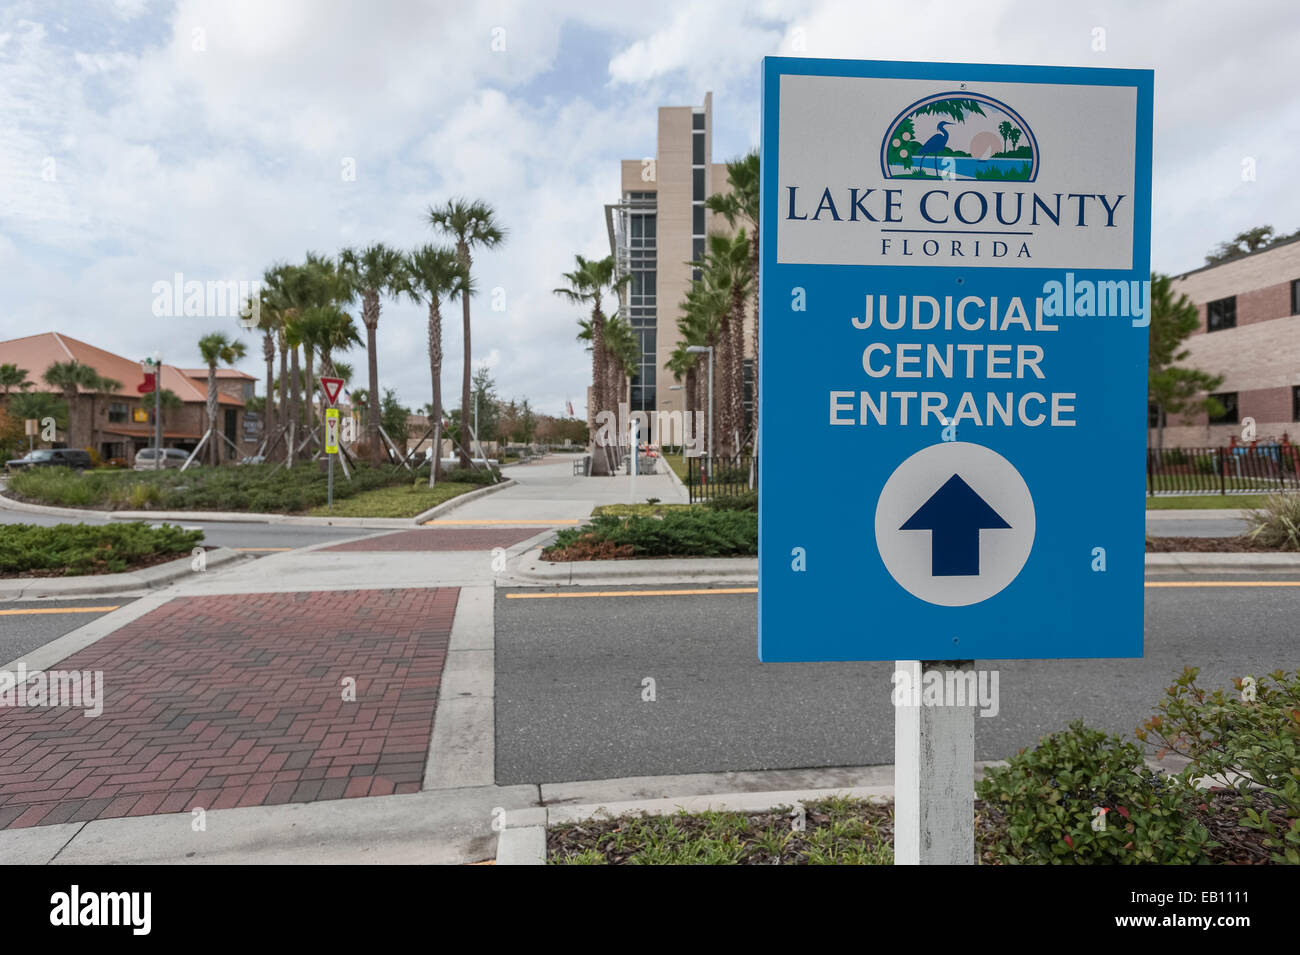 Judicial Center Tavares Lake County Florida USA Entrance Sign Stock Photo